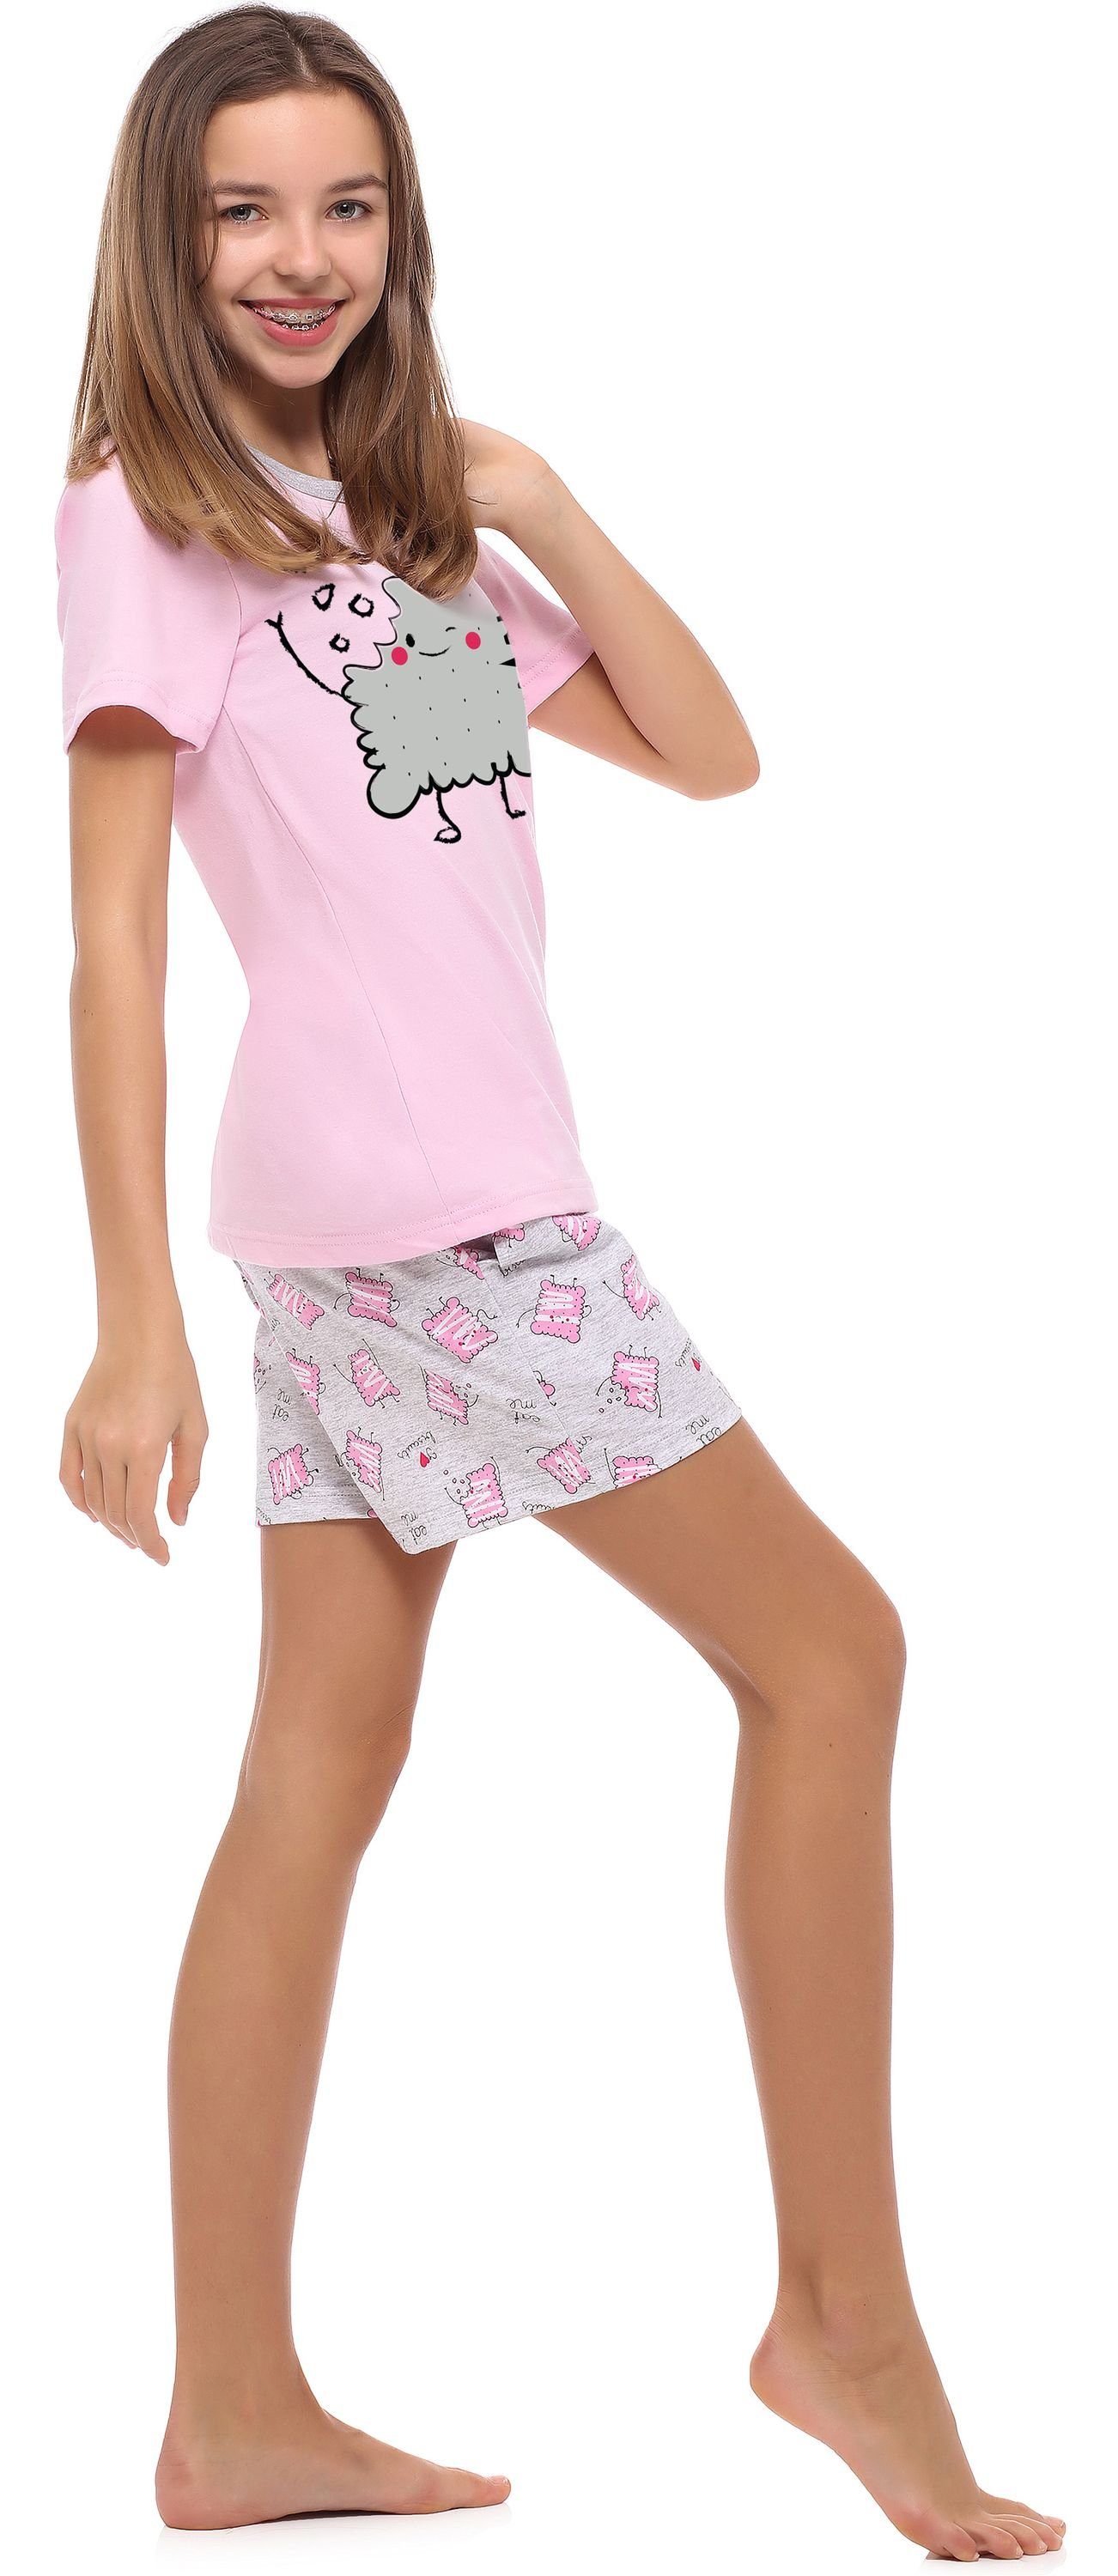 MS10-241 Mädchen Jugend Rosa/Kekse Schlafanzug Style Merry Schlafanzug